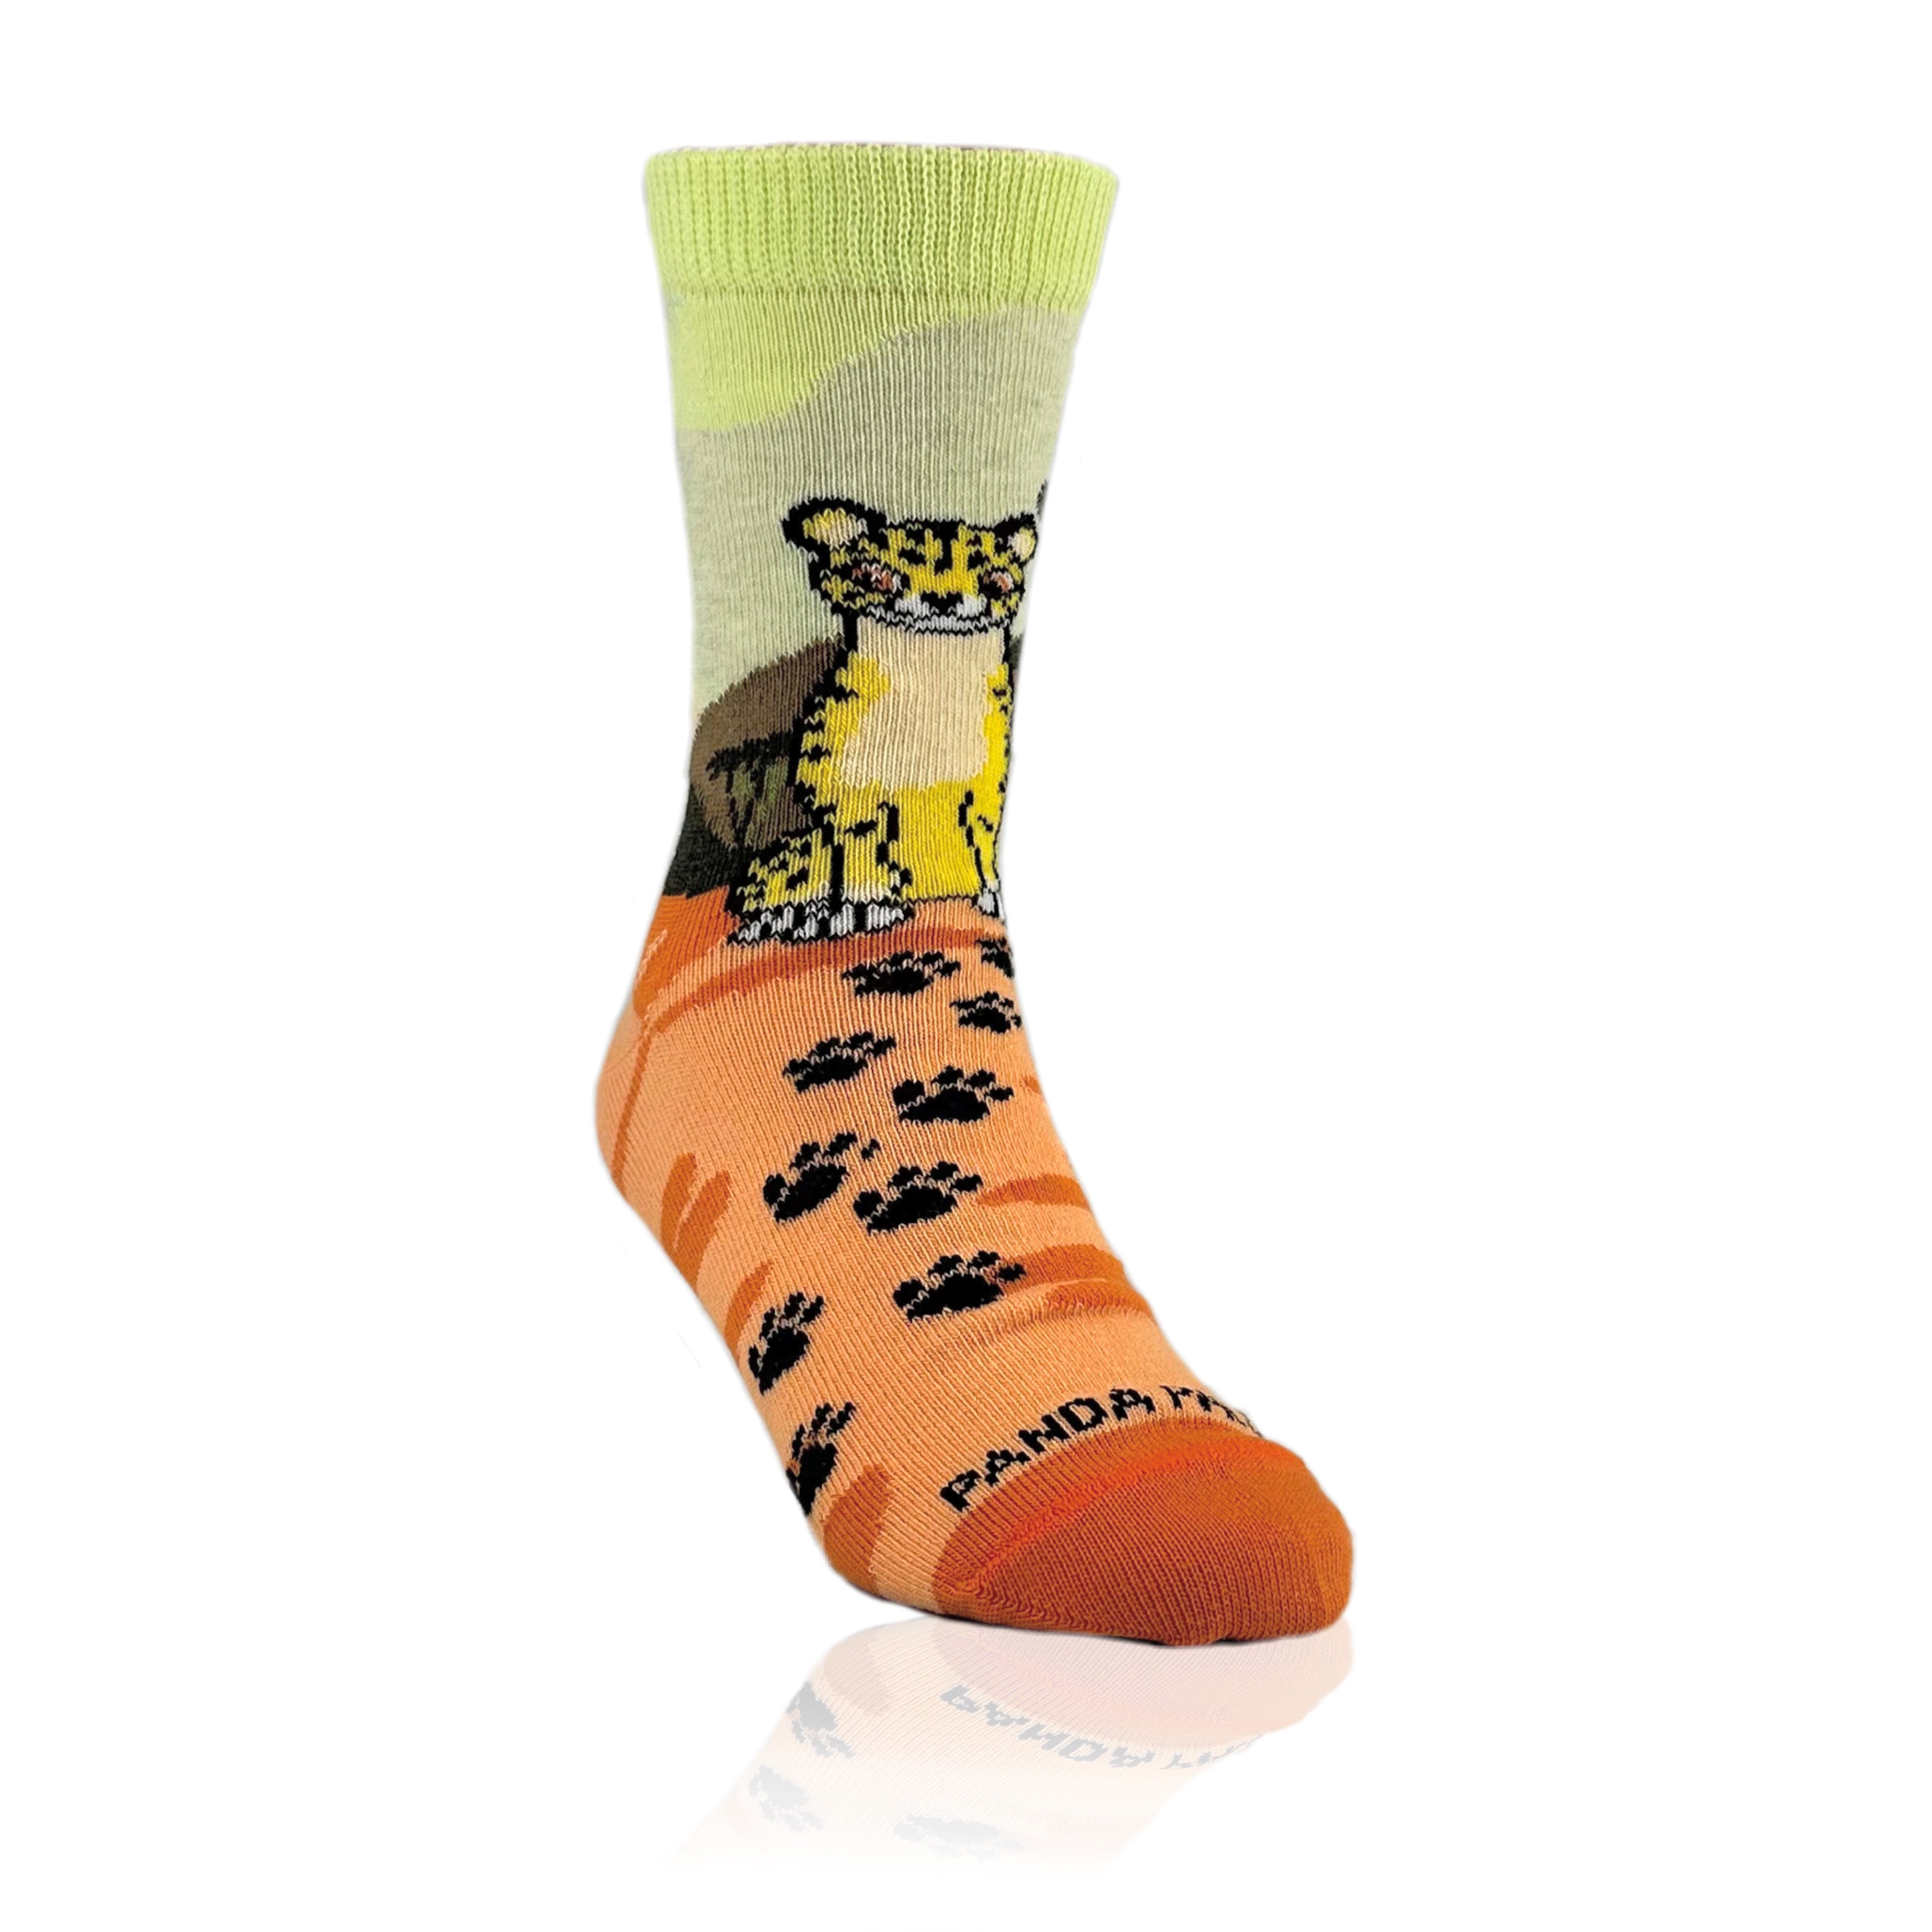 Cheetah Socks from the Sock Panda (Ages 3-7)